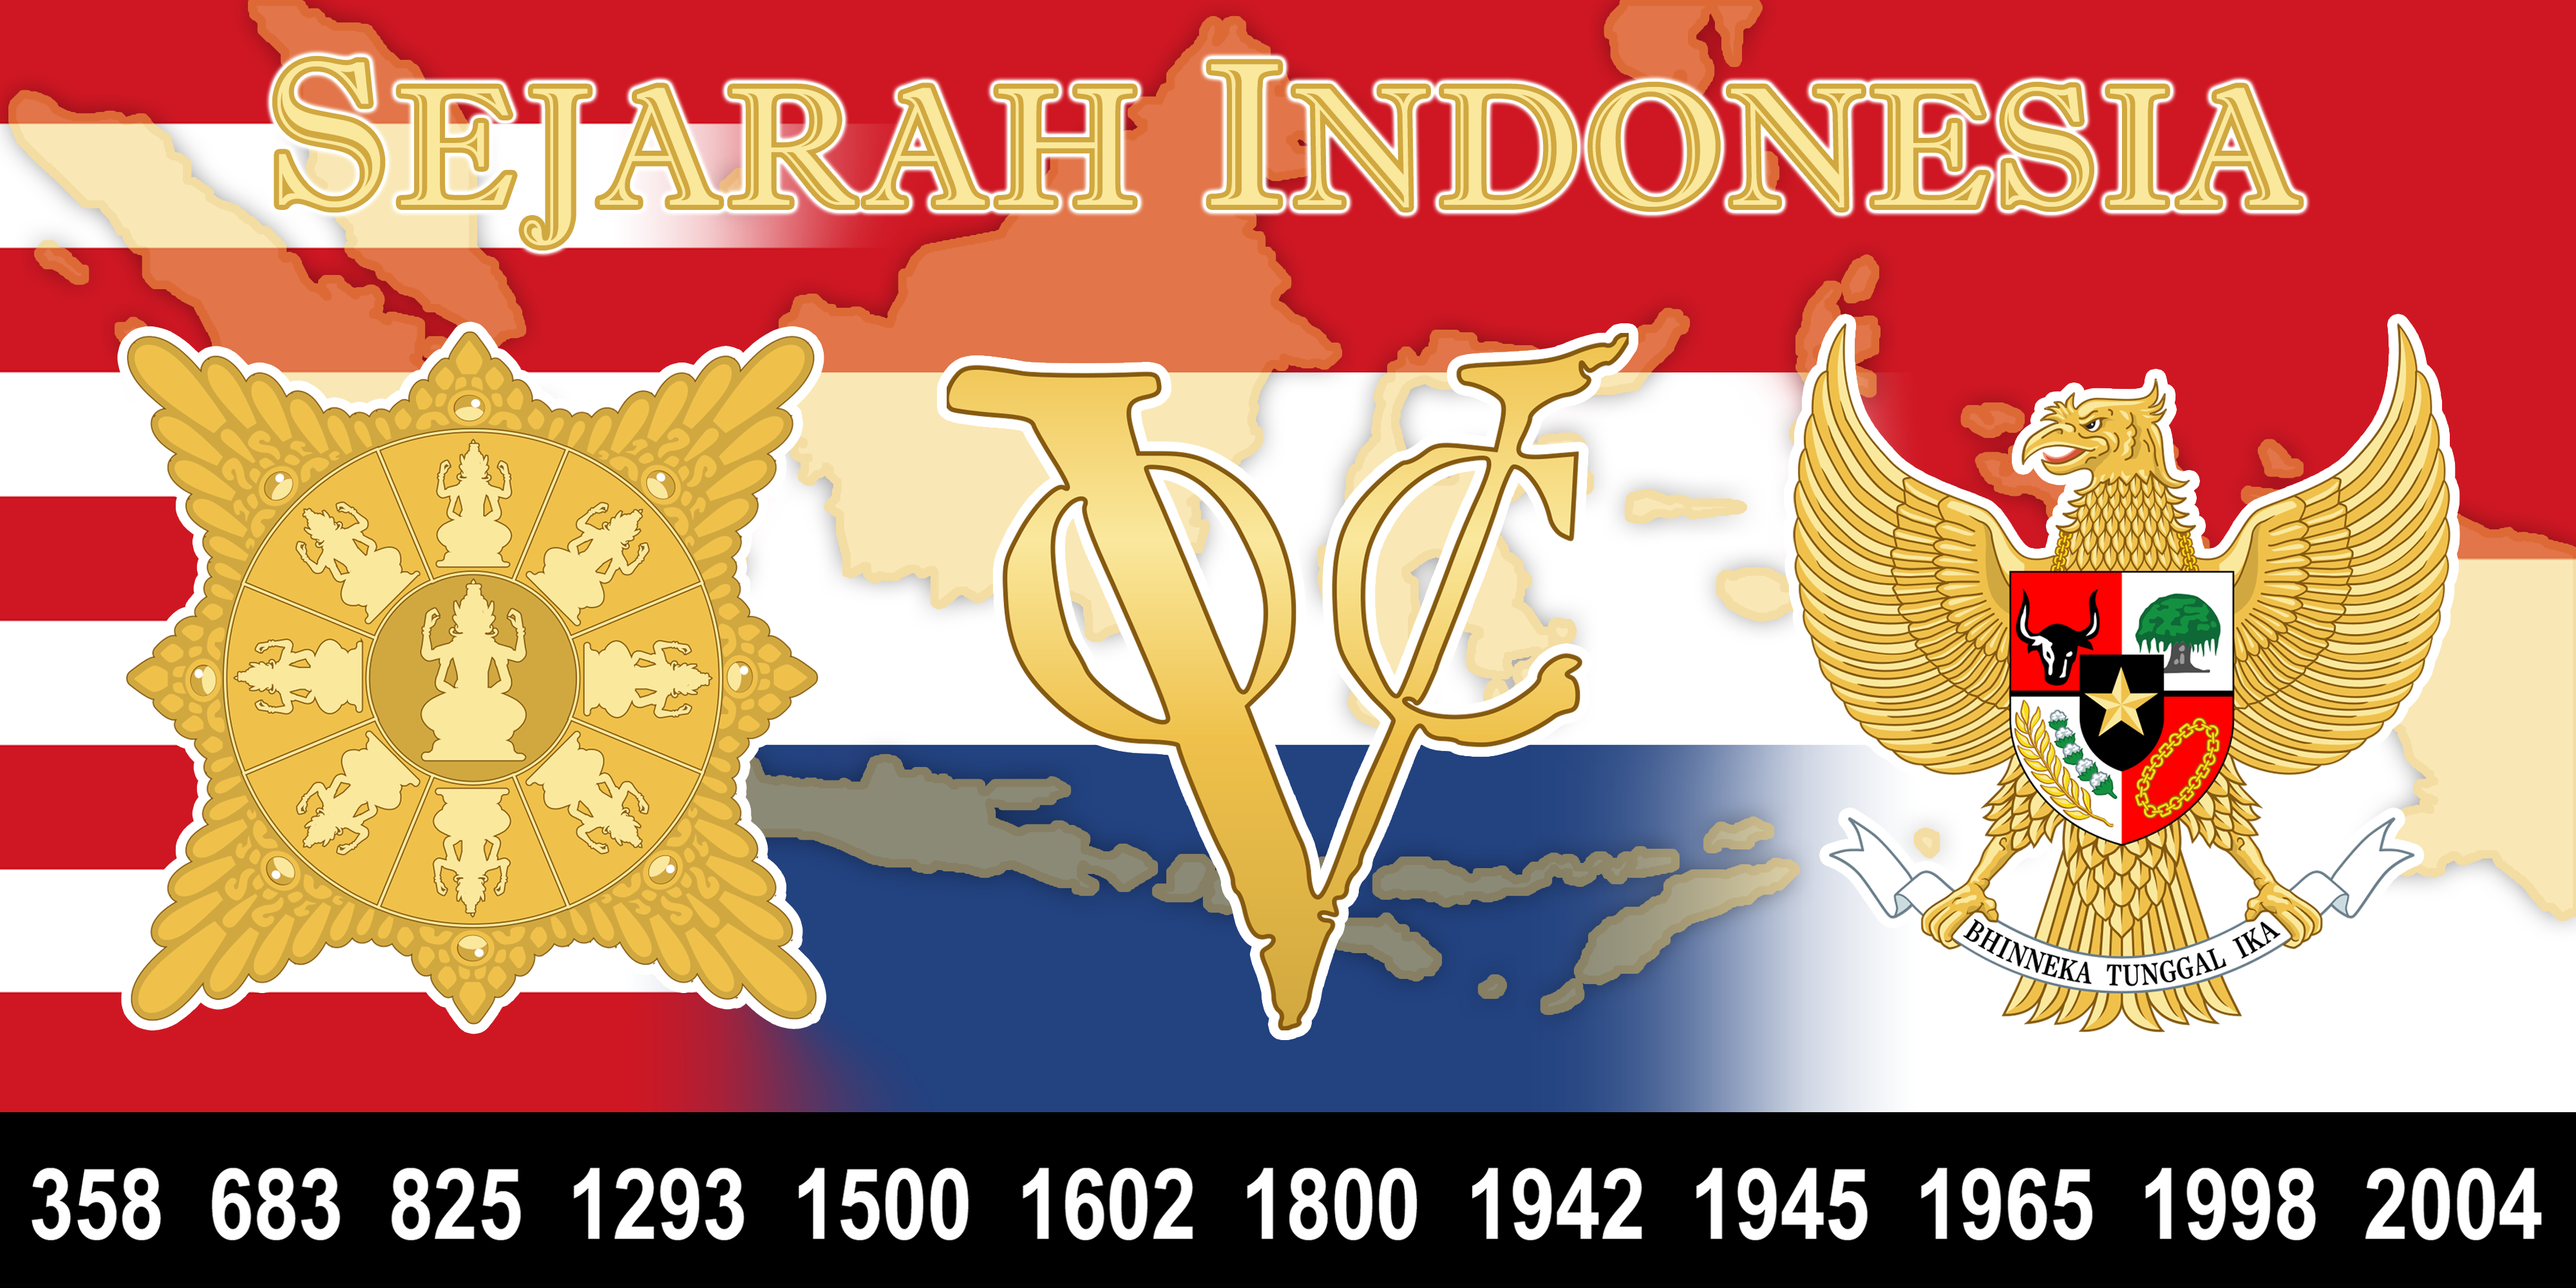 Sejarah Indonesia - Wikipedia bahasa Indonesia, ensiklopedia bebas